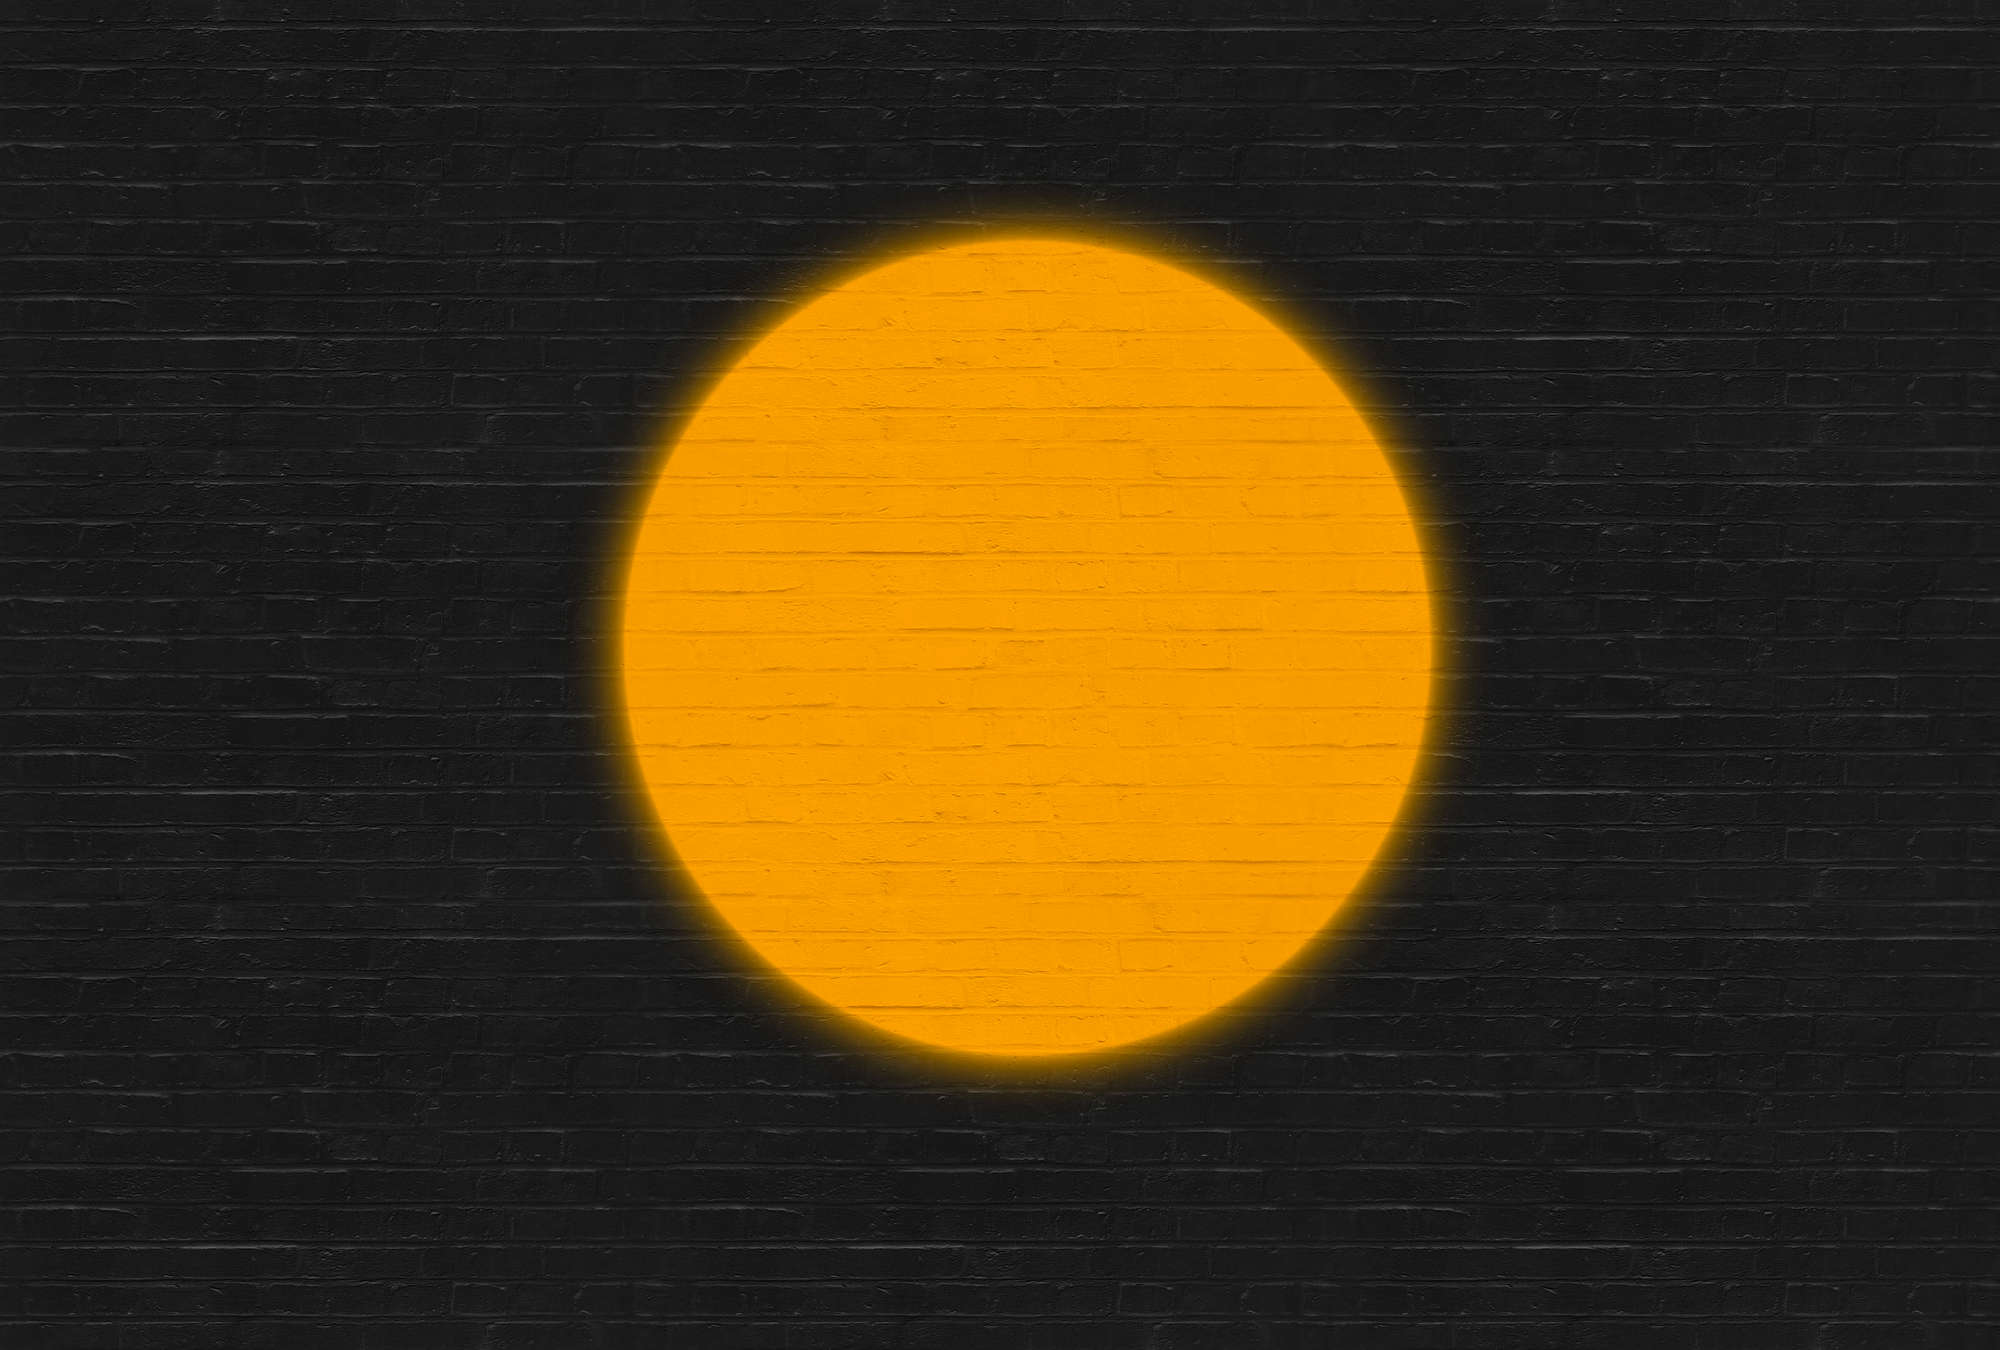             Minimalistisch design & baksteenlook behang - Oranje, zwart
        